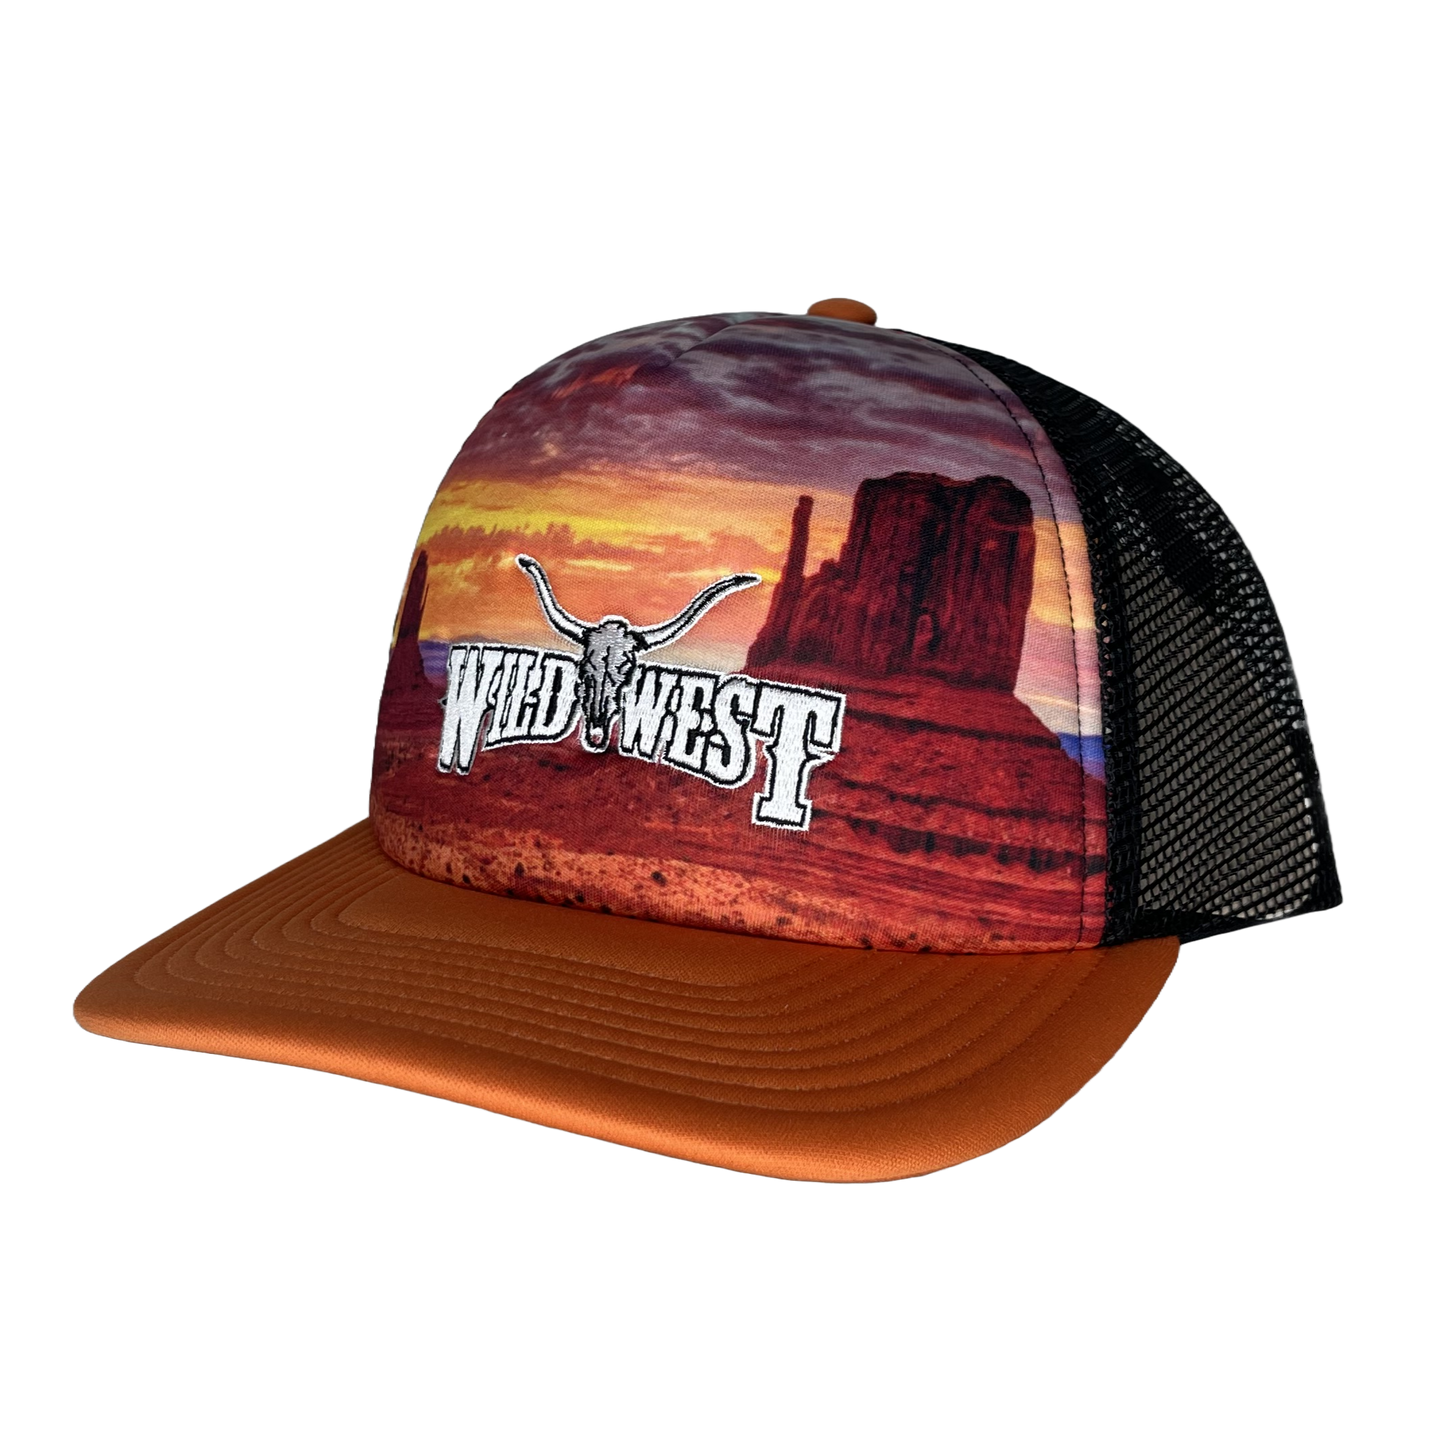 Wild West Sunset Graphic Orange & Black Trucker Cap MV3094-OR